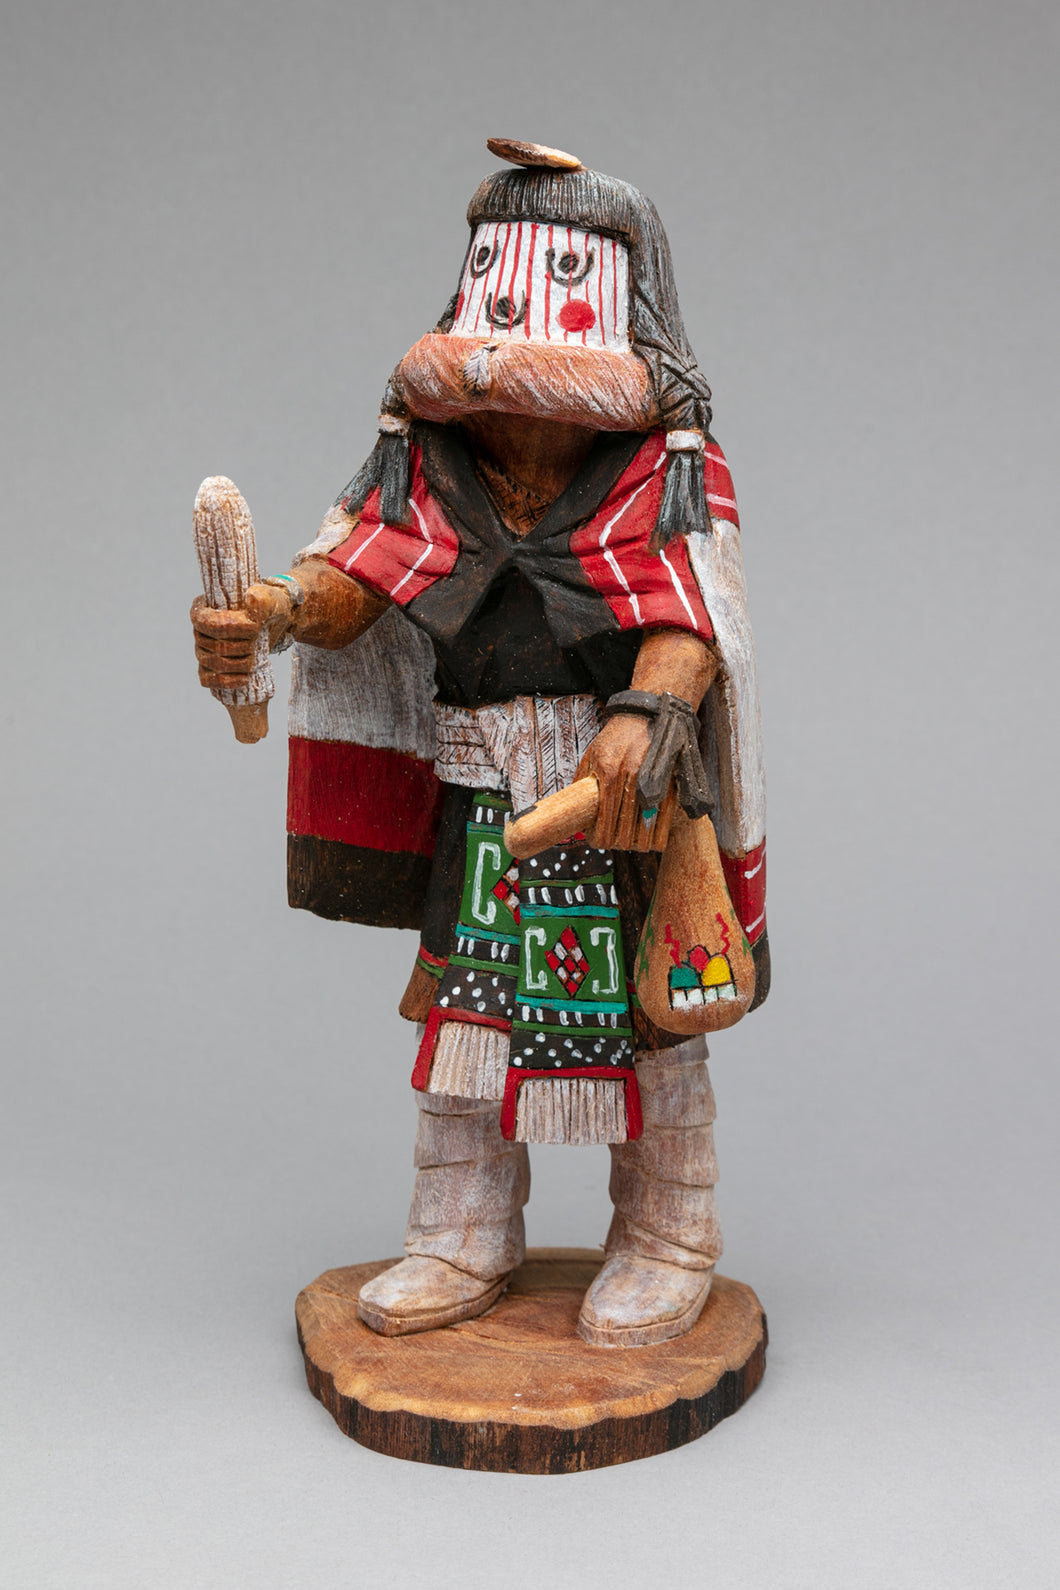 Hahay-i-wu-uti (Grandmother) Kachina by Henry Naja, Hopi